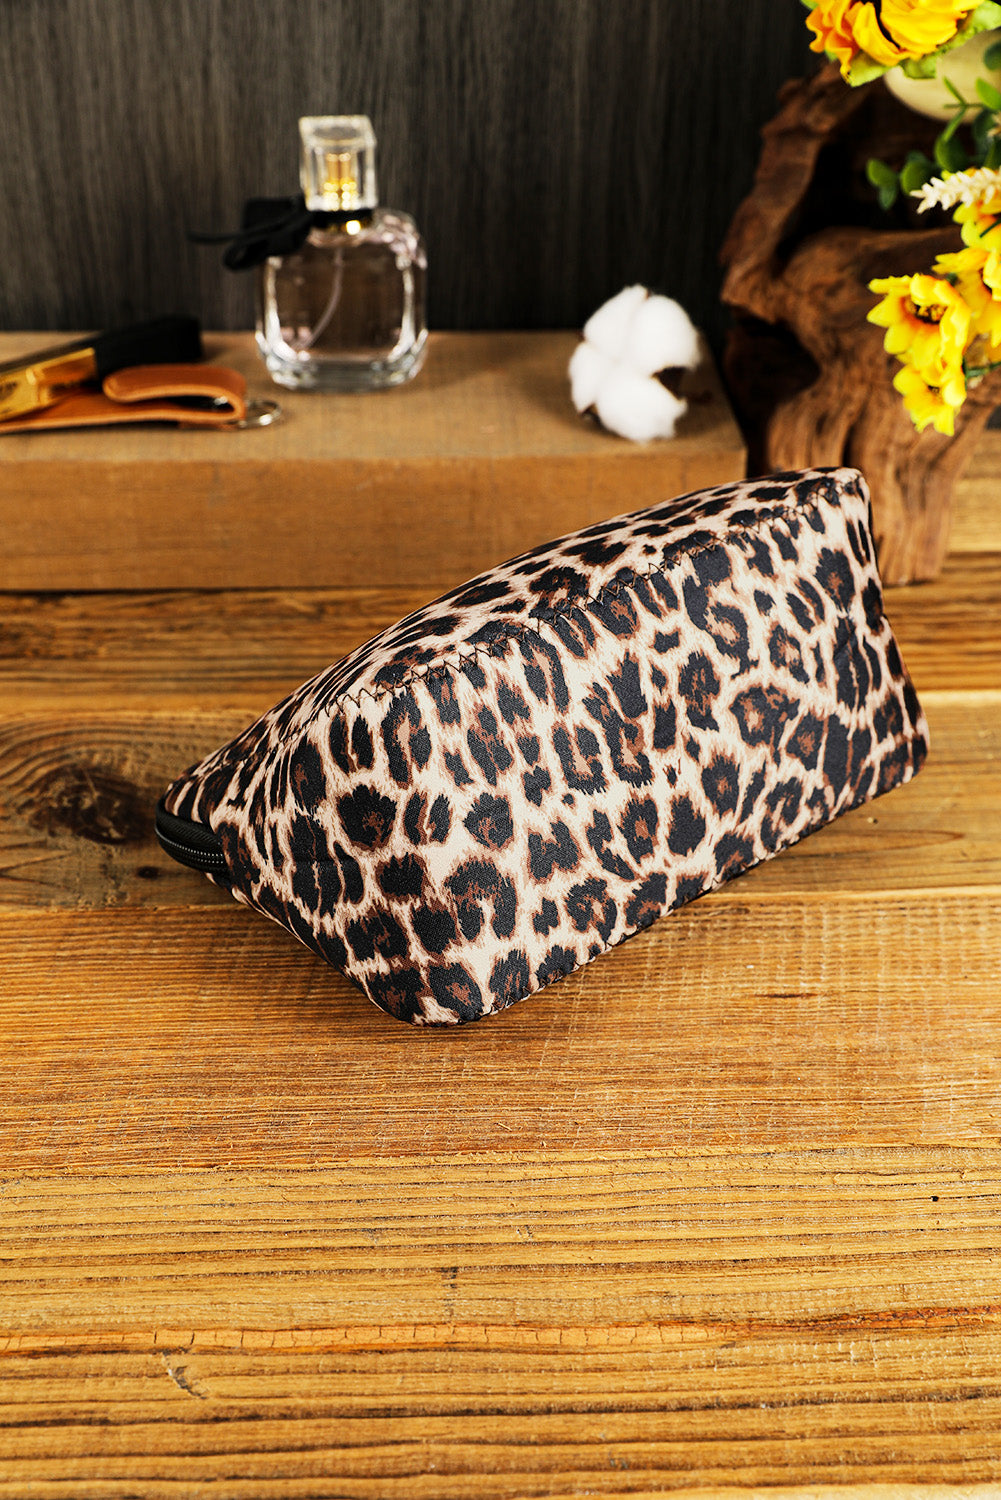 Leopard Make up Storage Bag